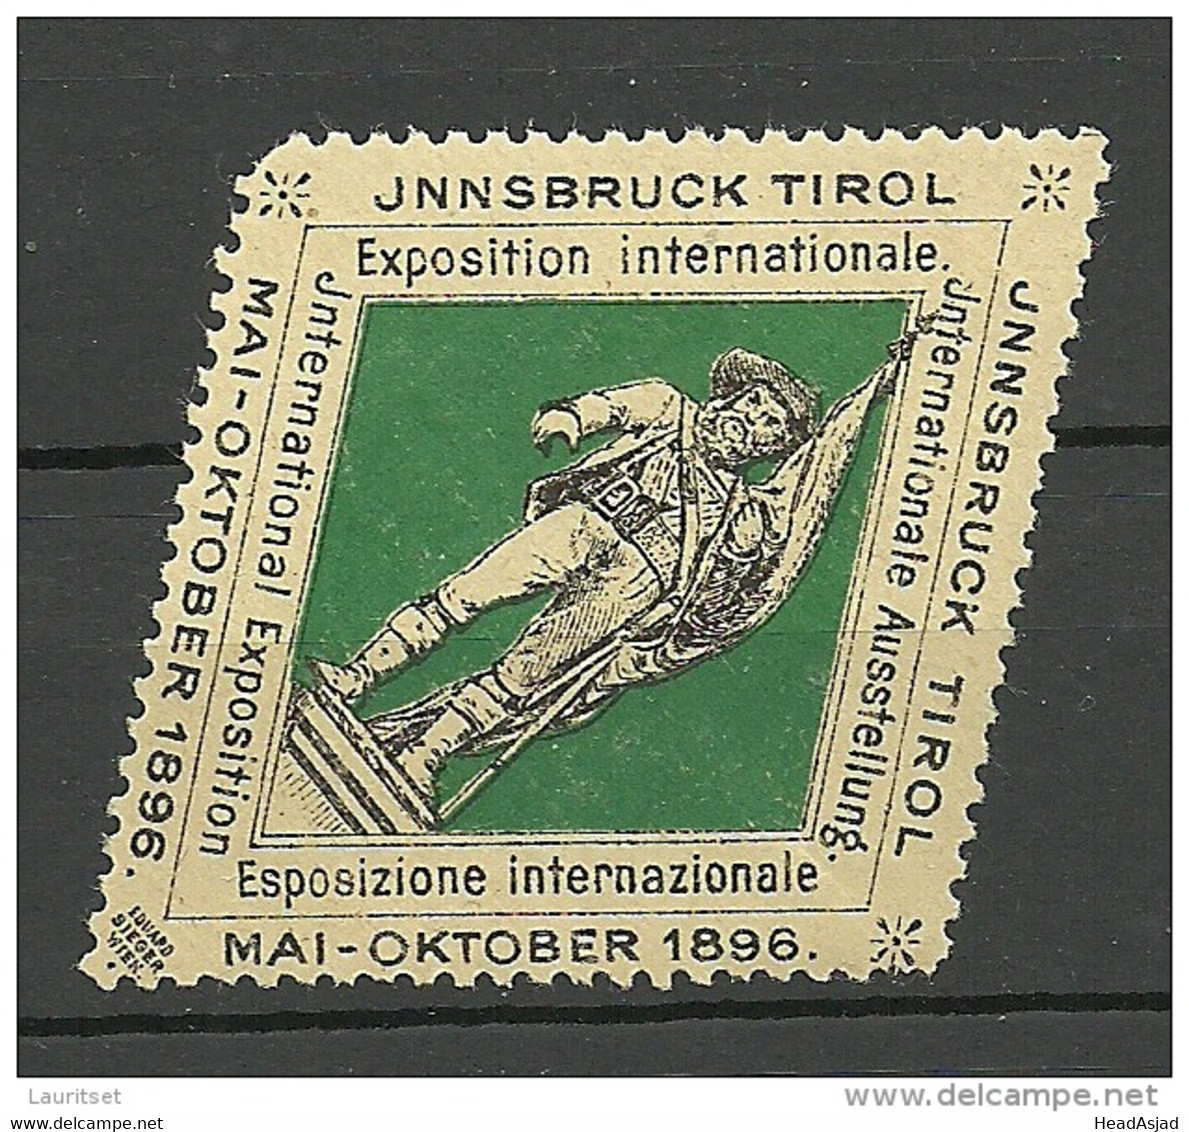 AUSTRIA Österreich Vignette 1896 Ausstellung Innsbruck Tirol Exposition Internationale * - Unused Stamps